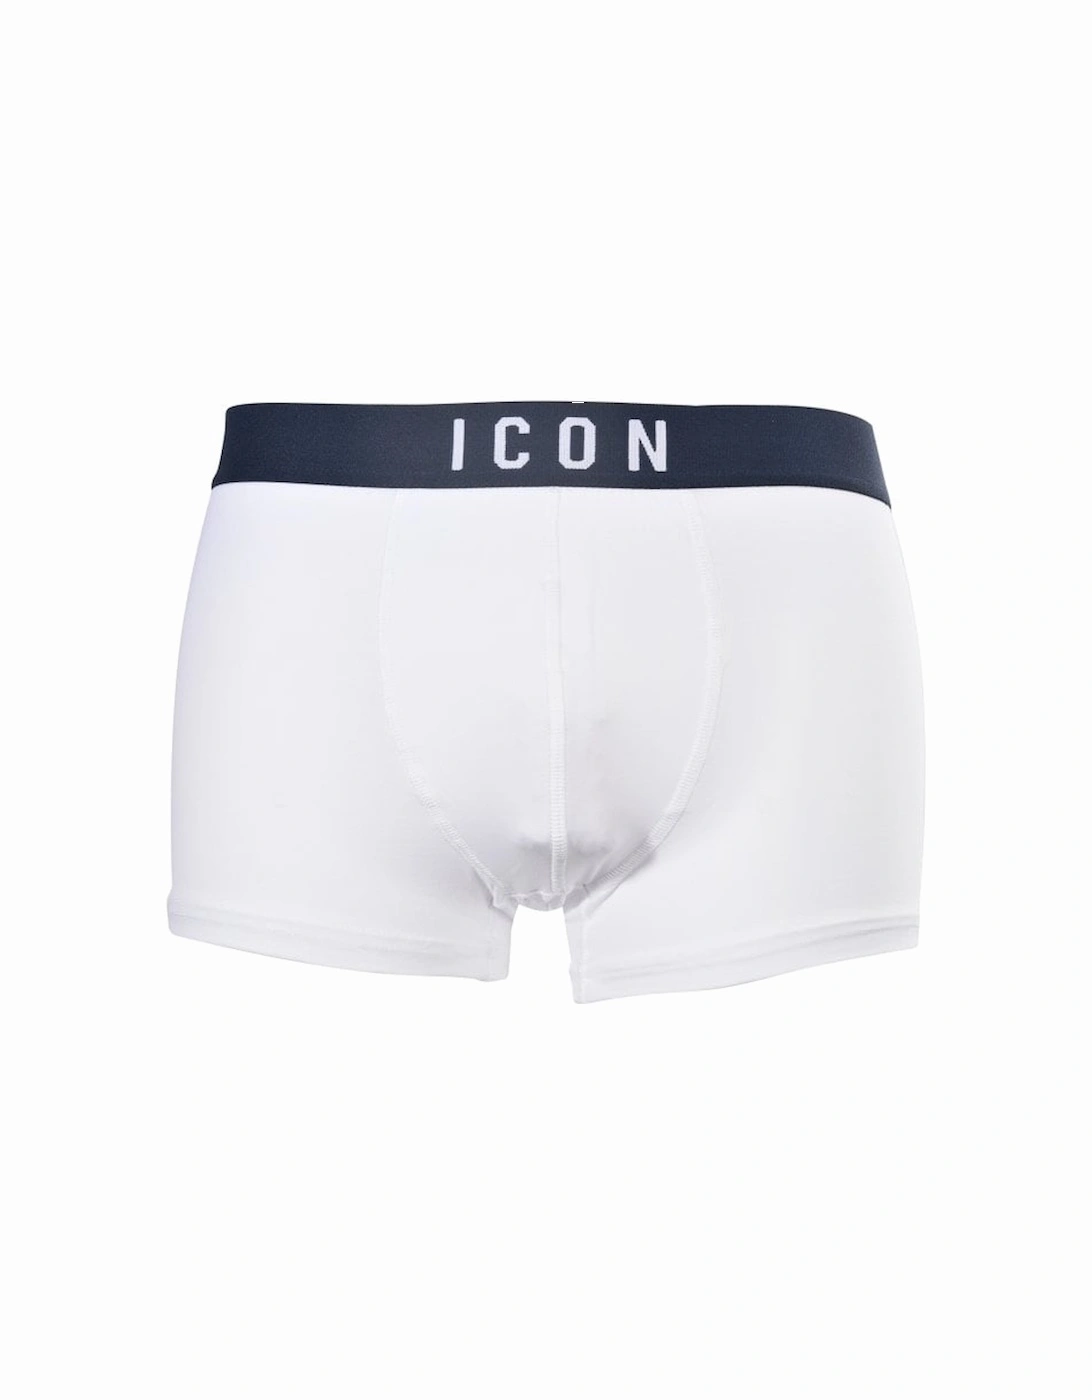 ICON Logo Boxer Trunk, White/navy, 5 of 4